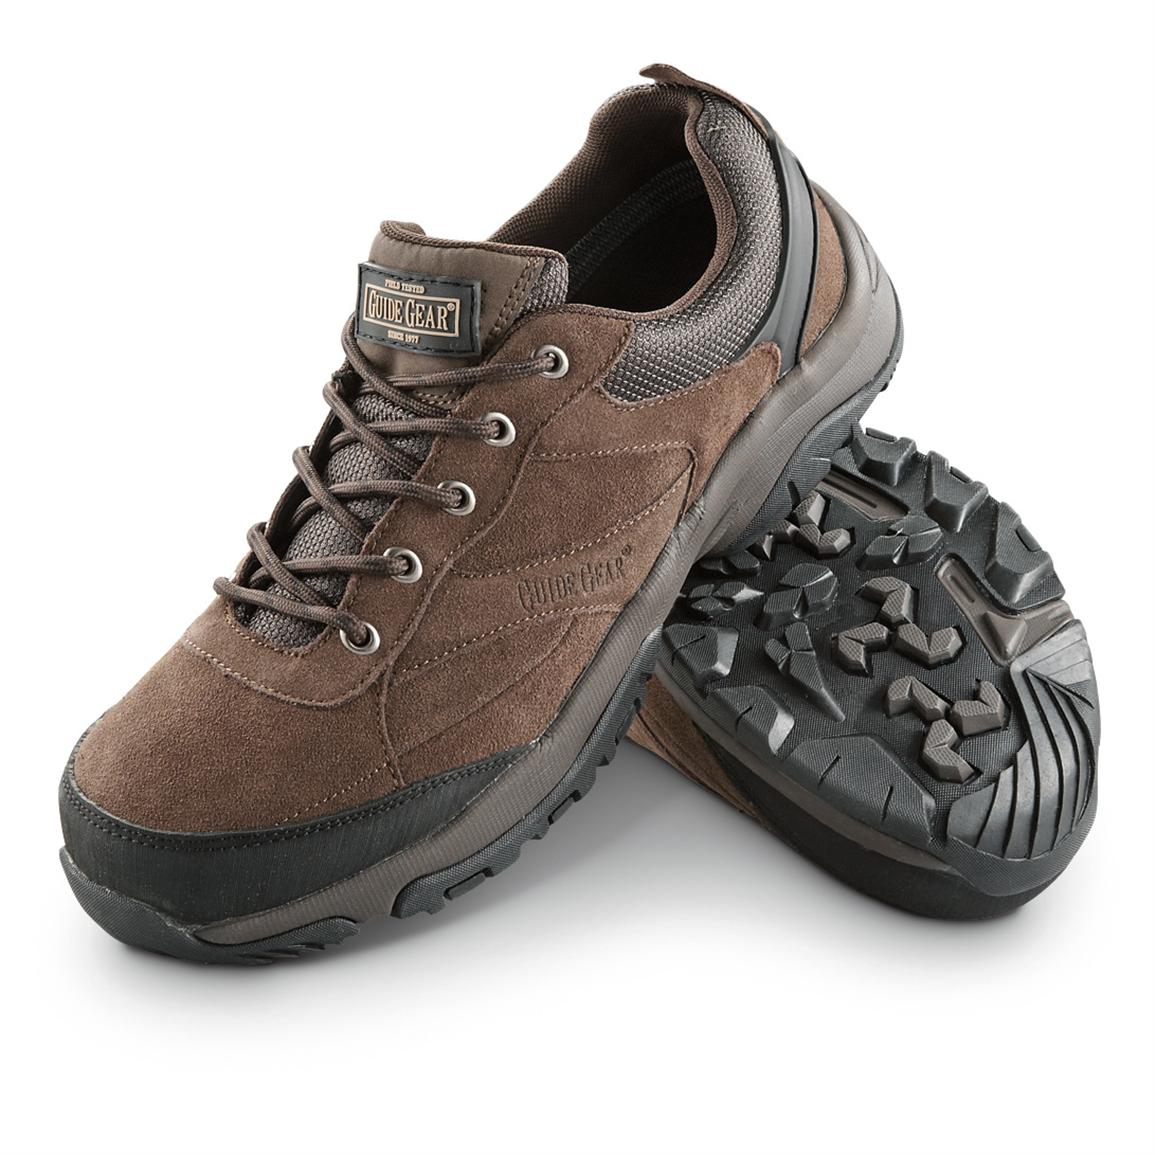 Men's Guide Gear® True Trail Waterproof Shoes, Brown - 235345, Hiking ...